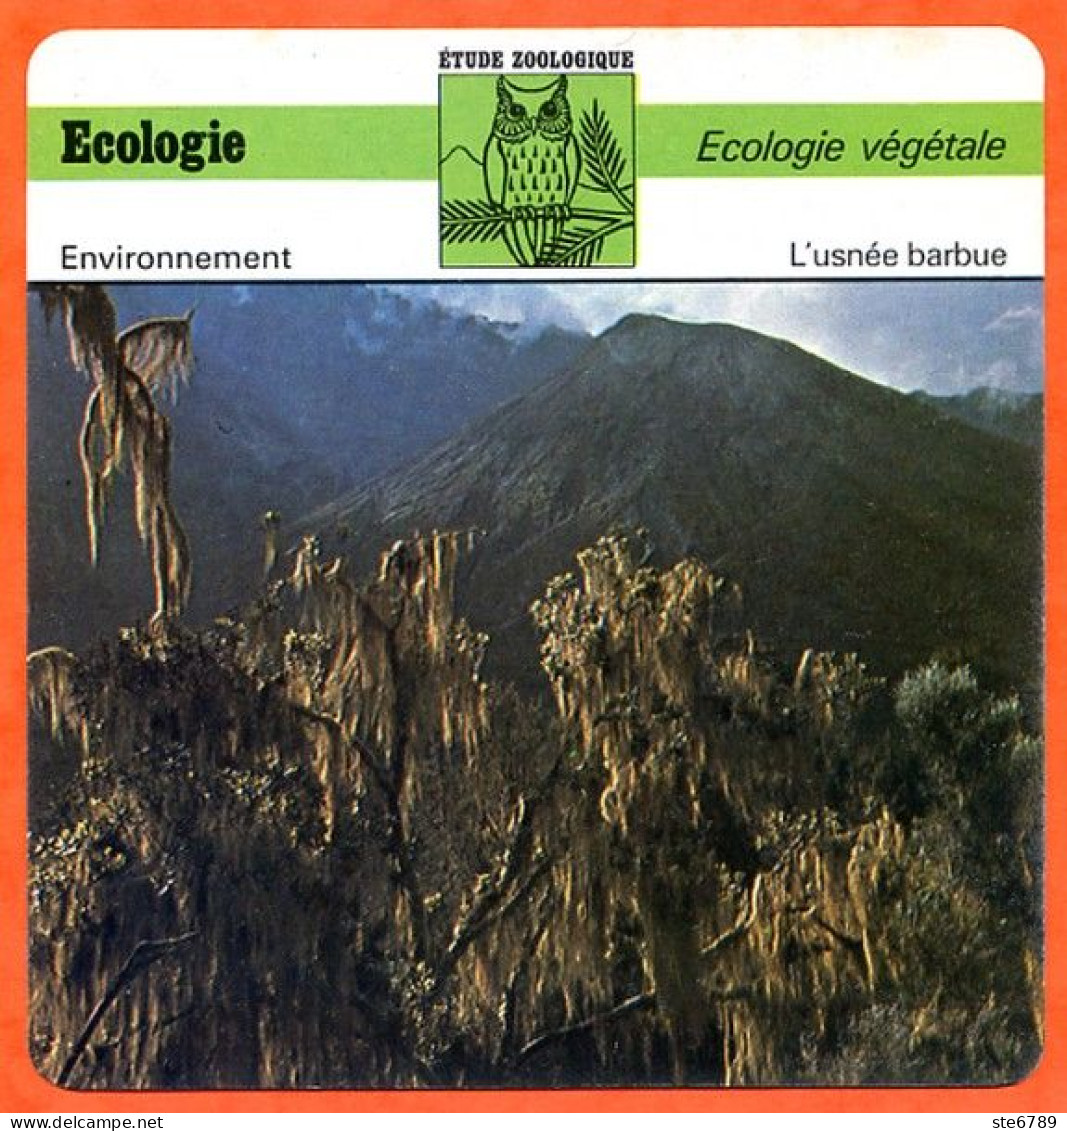 Fiche Ecologie Végétale Usnée Barbue Illustration Usnea Barbata Mont Meru Tanzanie  Etude Zoologique Environnement - Géographie